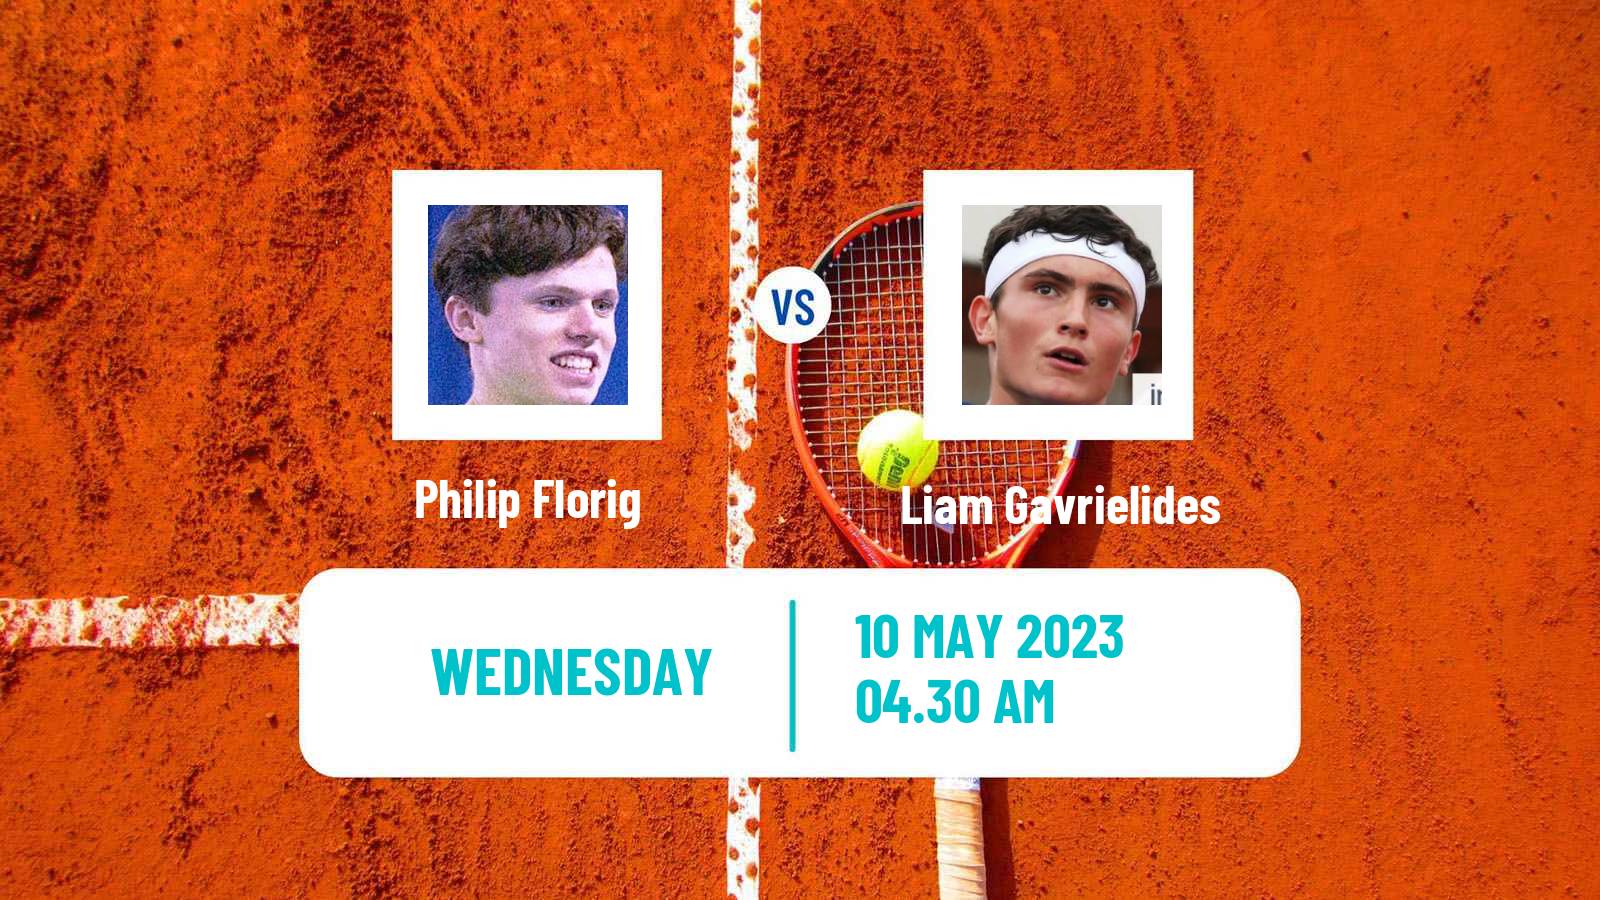 Tennis ITF Tournaments Philip Florig - Liam Gavrielides